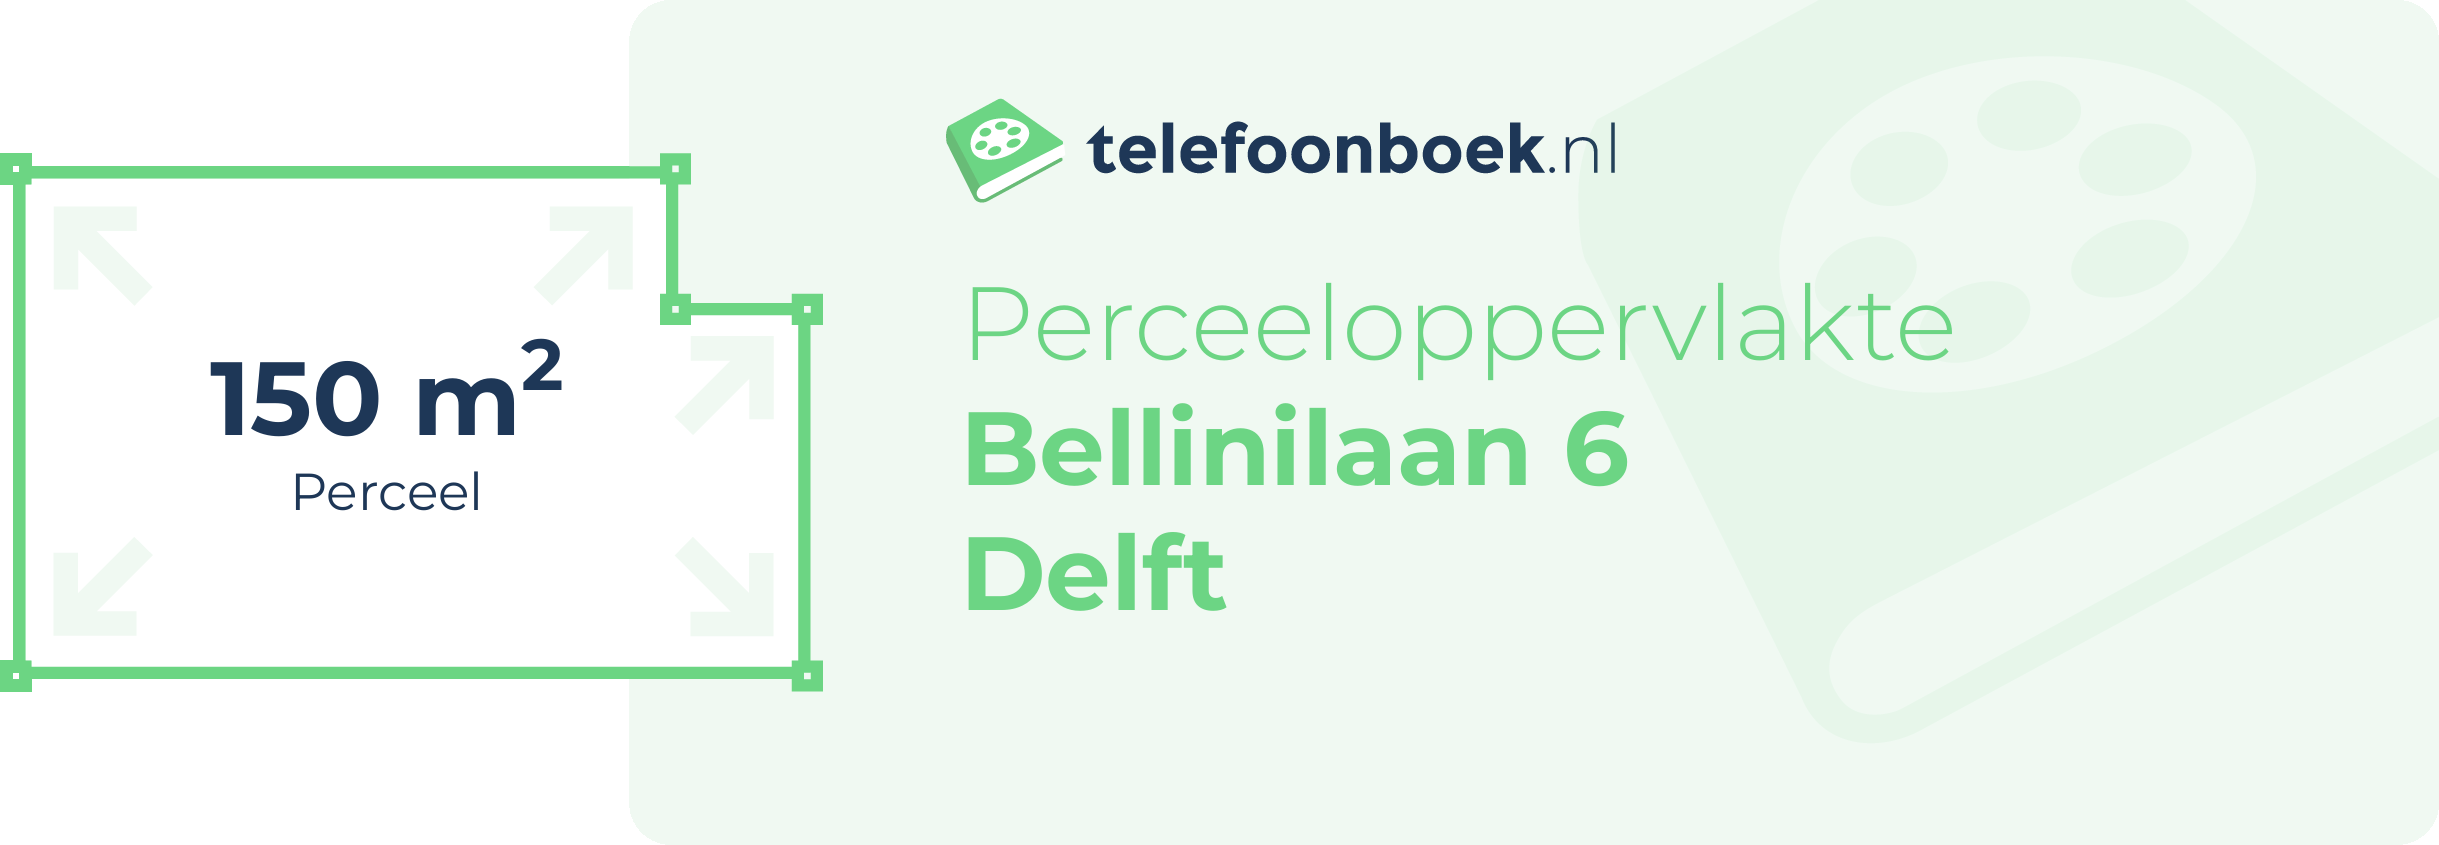 Perceeloppervlakte Bellinilaan 6 Delft